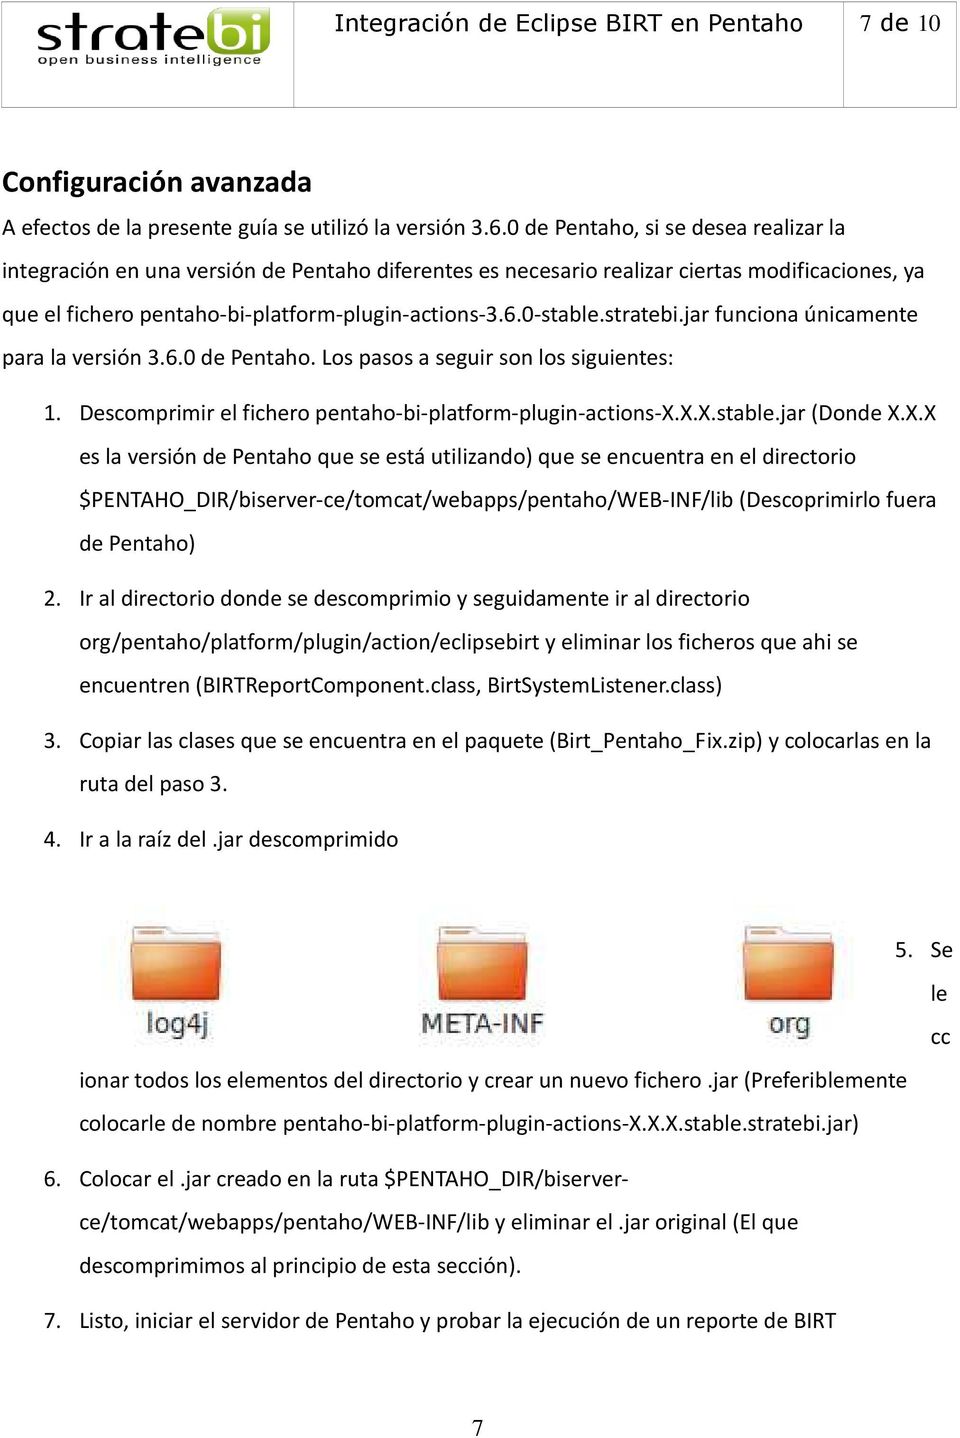 stratebi.jar funciona únicamente para la versión 3.6.0 de Pentaho. Los pasos a seguir son los siguientes: 1. Descomprimir el fichero pentaho-bi-platform-plugin-actions-x.x.x.stable.jar (Donde X.